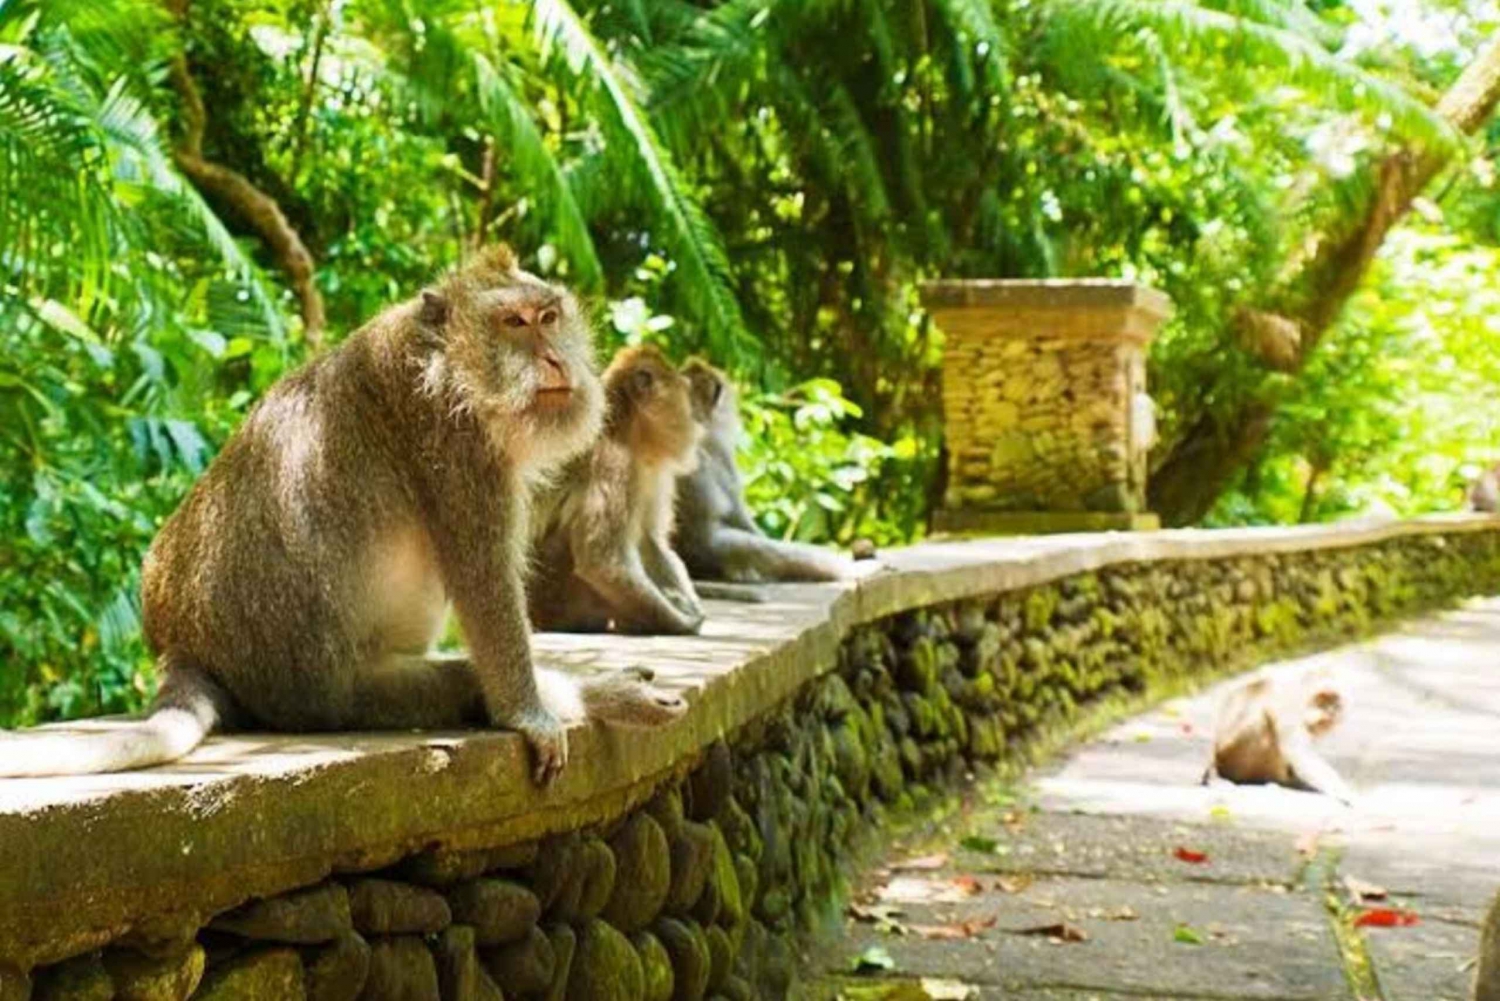 Bosque de monos, terraza del arroz, templo del agua y visita a la cascada